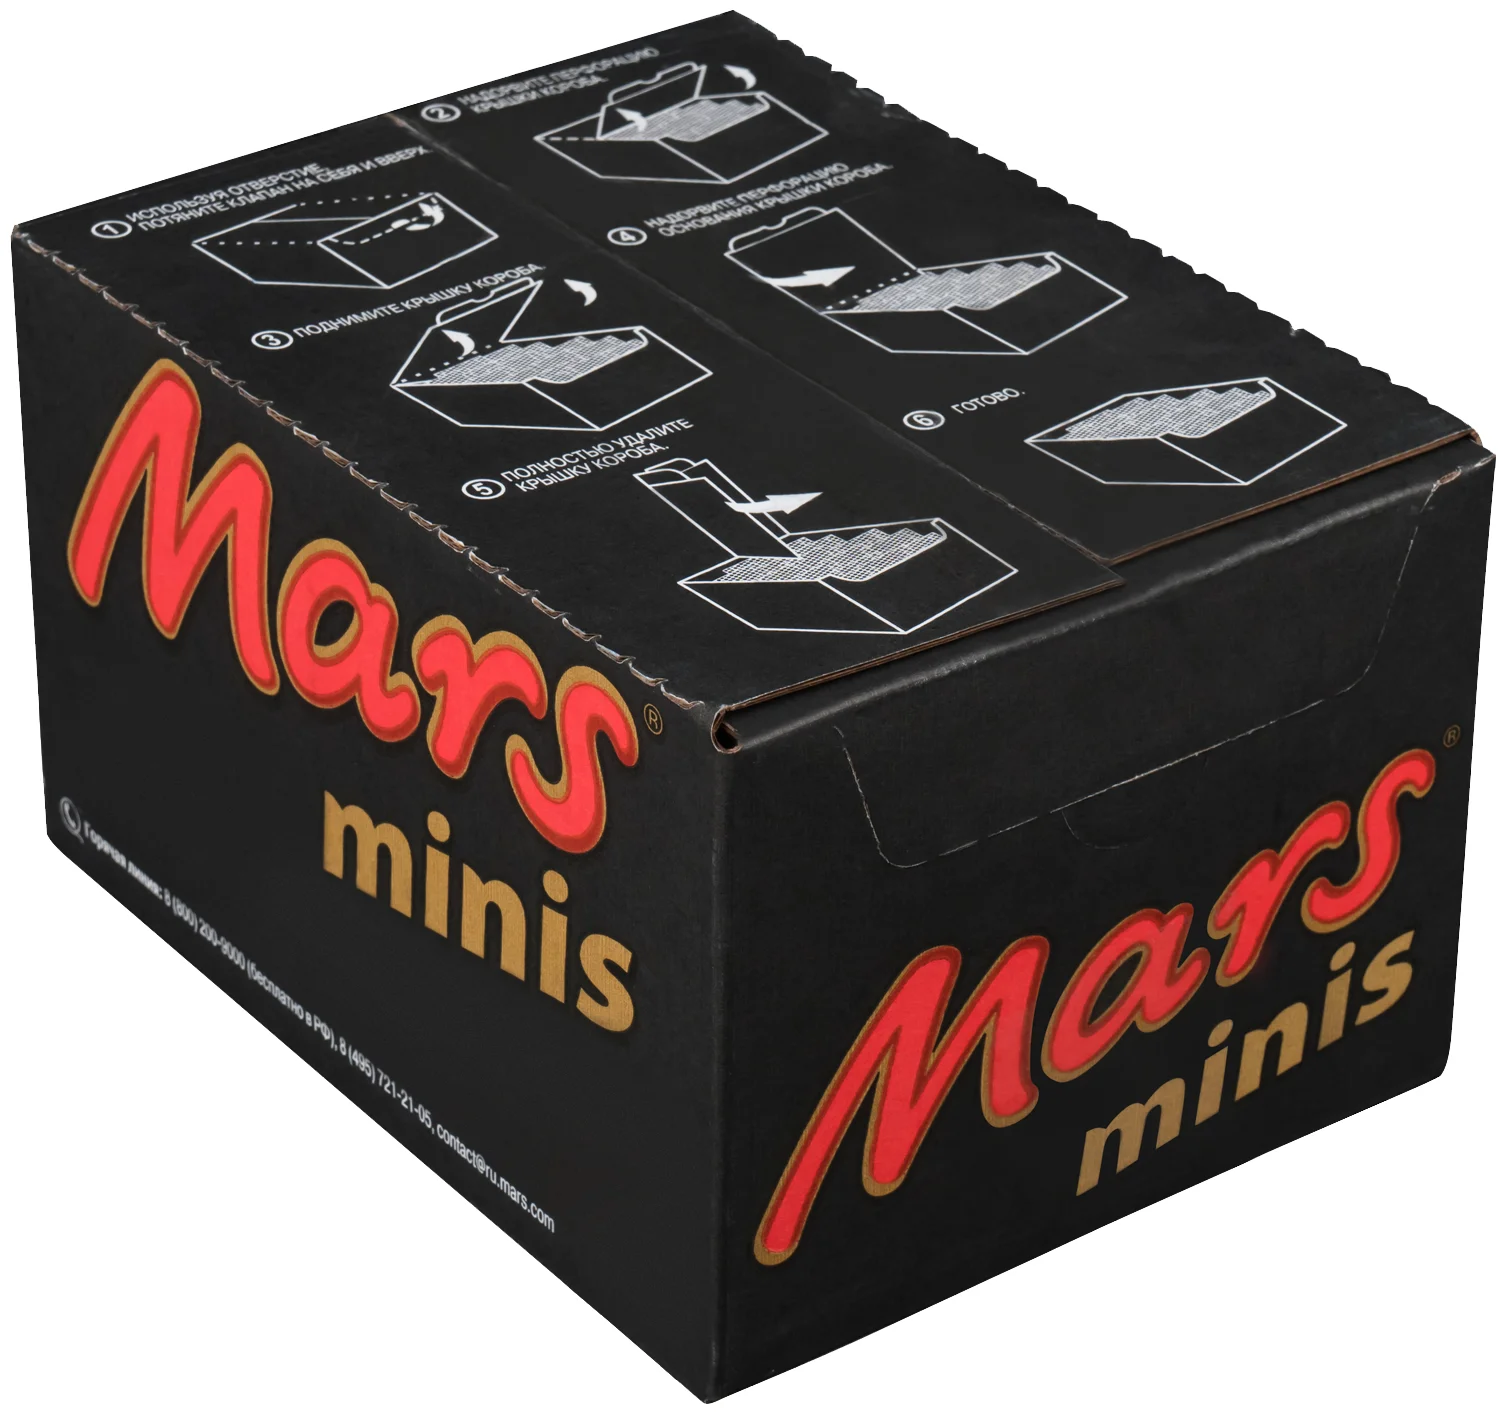 Mars minis - начинка: мягкая карамель, нуга